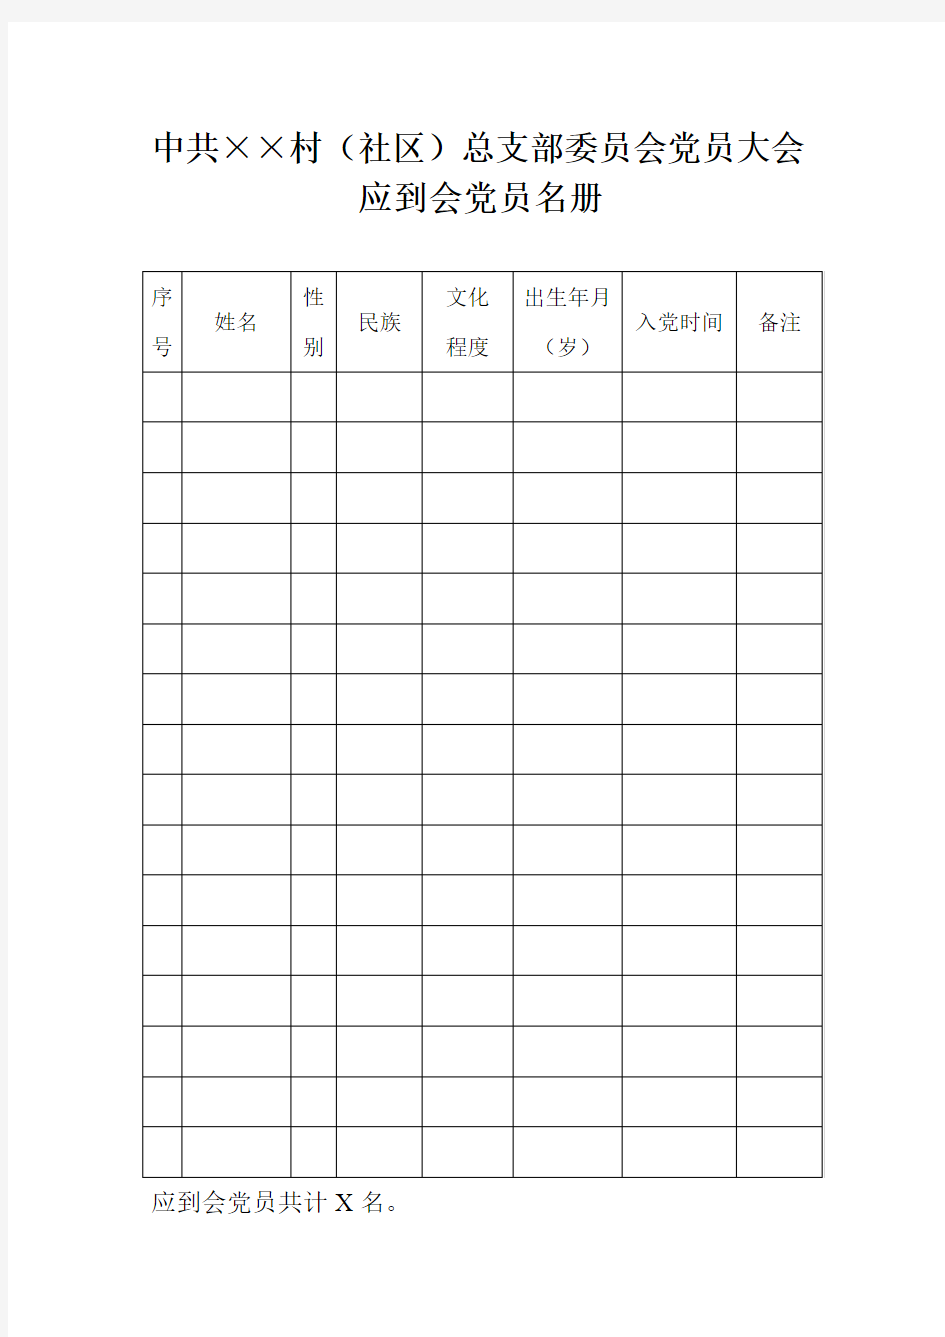 中共××村(社区)总支部委员会党员大会应到会党员名册